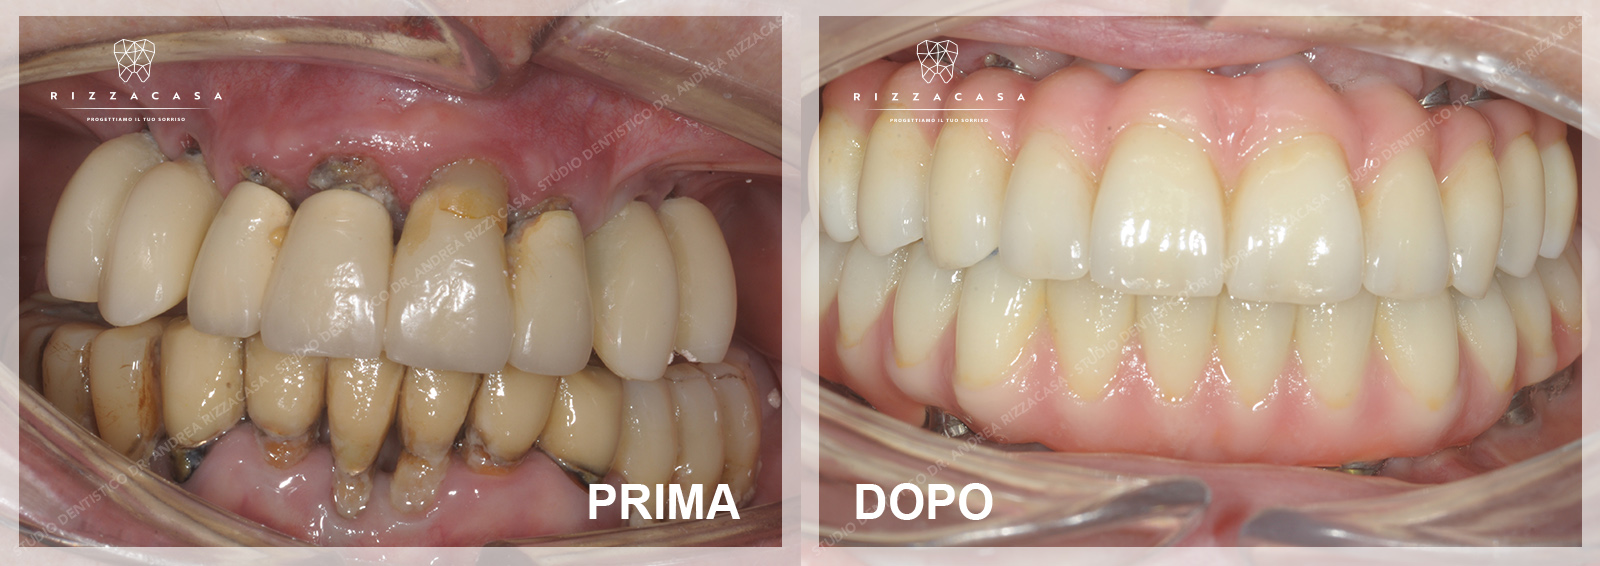 Implantologia All on Four Monza e Brianza - Studio Dentistico Rizzacasa